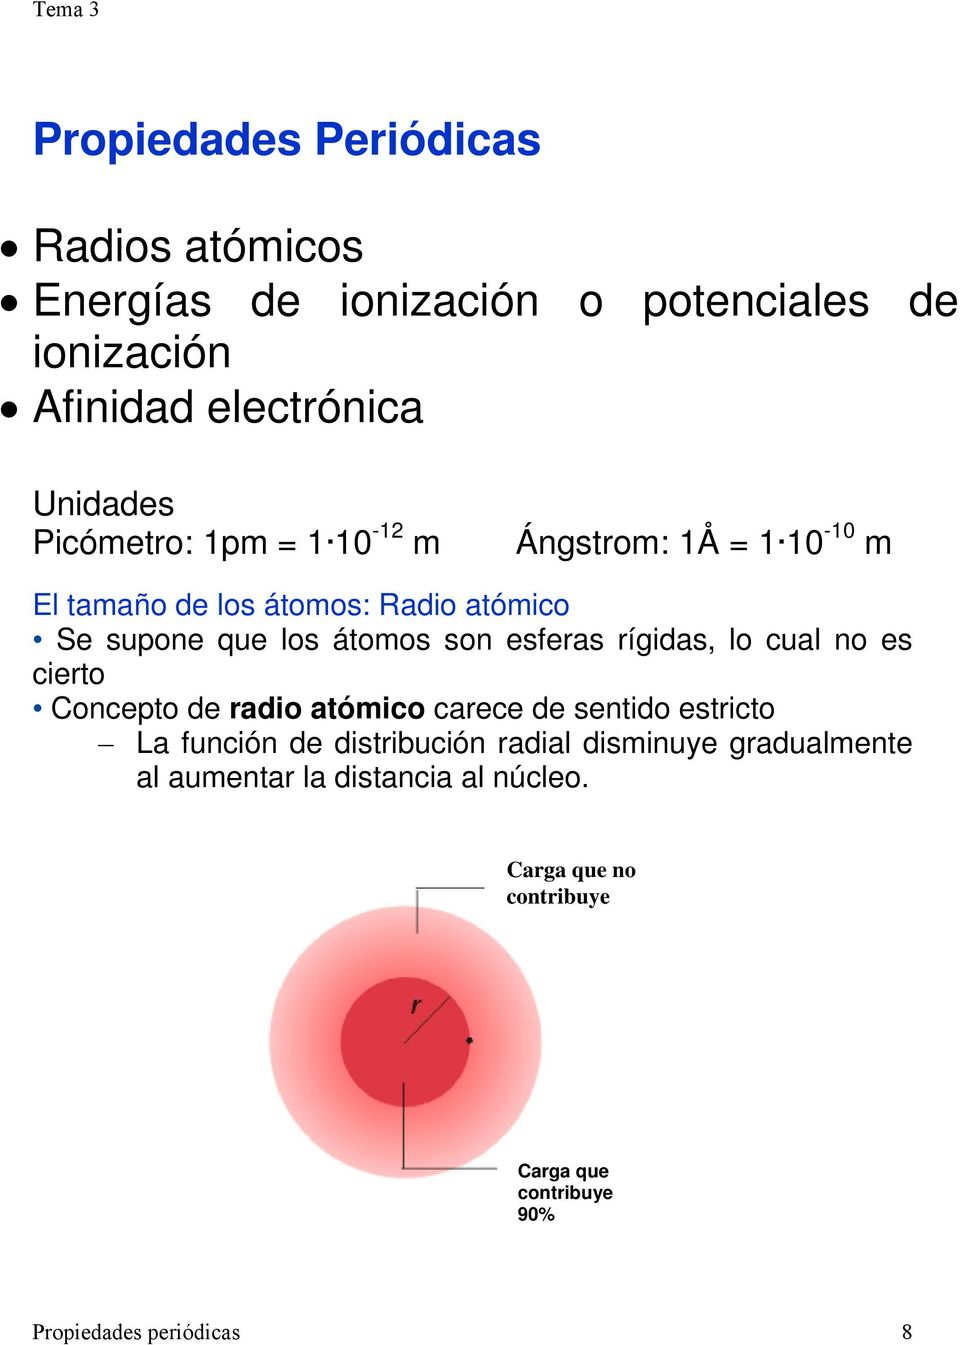 esferas rígidas, lo cual no es cierto Concepto de radio atómico carece de sentido estricto La función de distribución radial